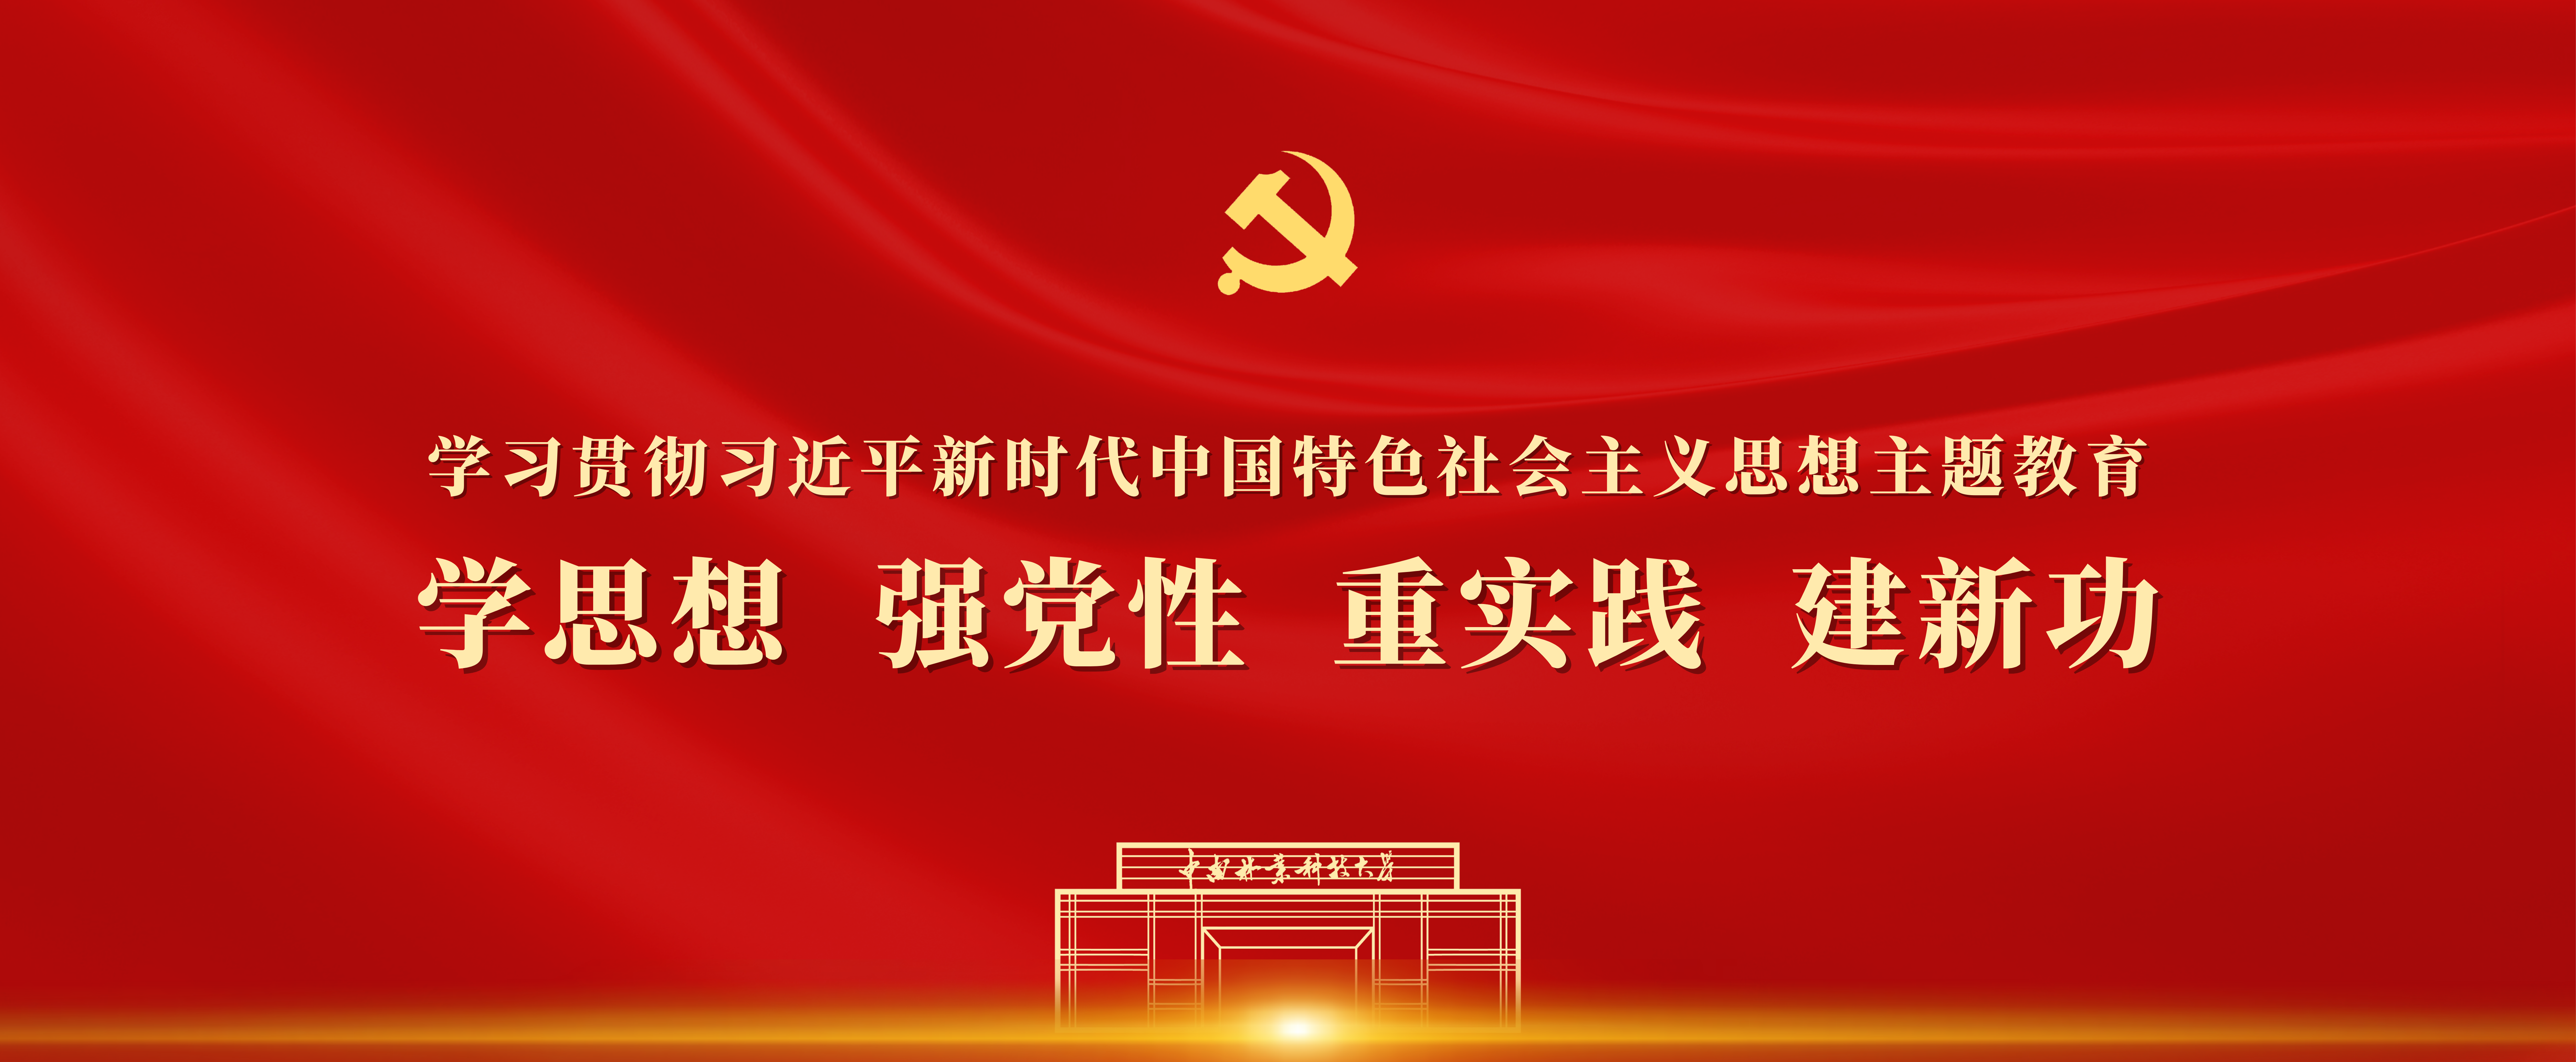 学习贯彻习近平新时代中国特色社会主义思想主题教育.png